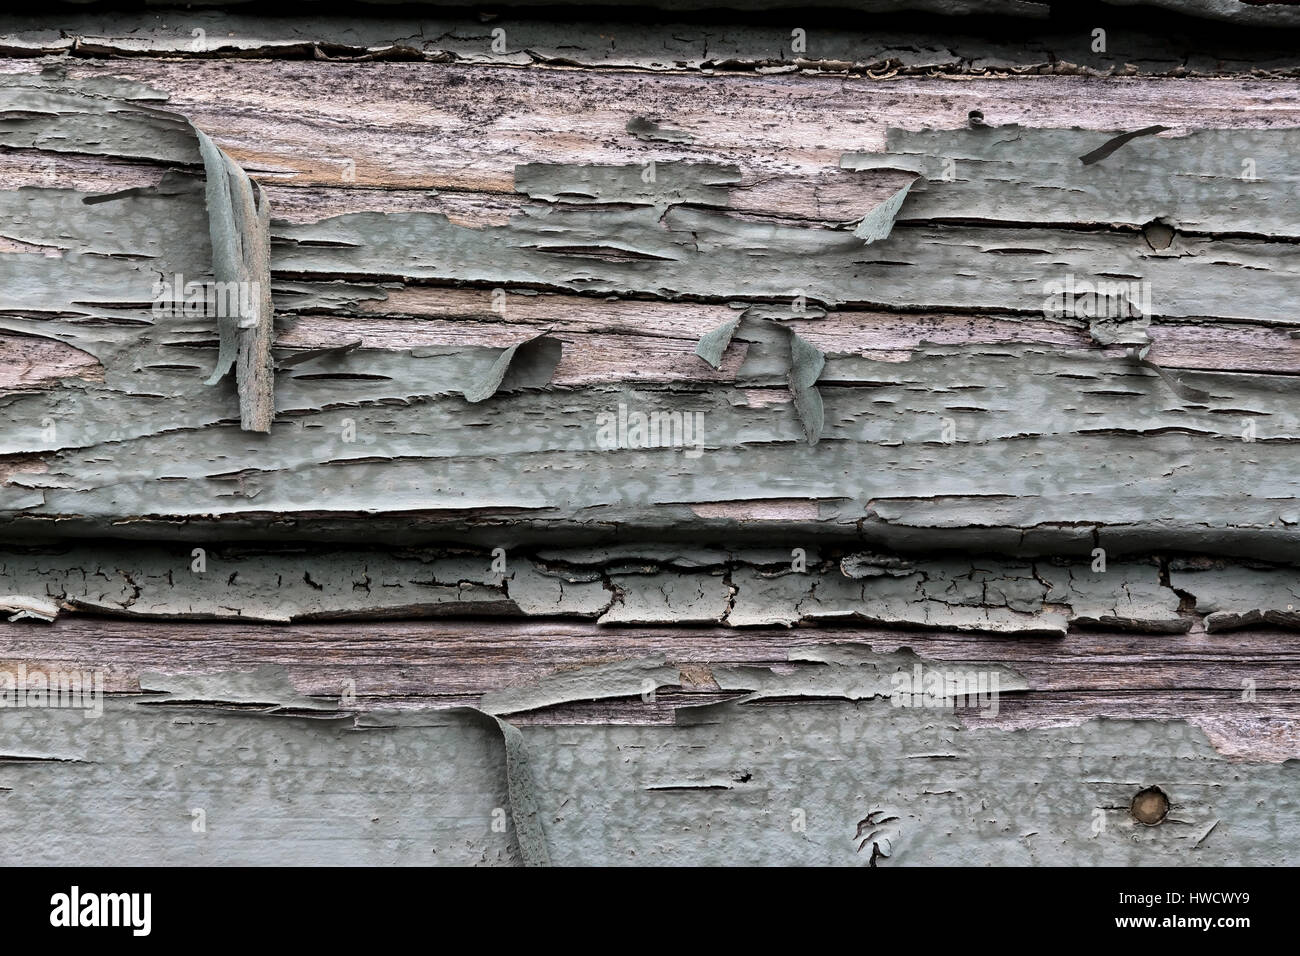 Persona vecchia, sfoglia il colore mediante una finestra di legno. Meteo, Alte, abgeblätterte Farbe bei einem Holzfenster. Witterung Foto Stock